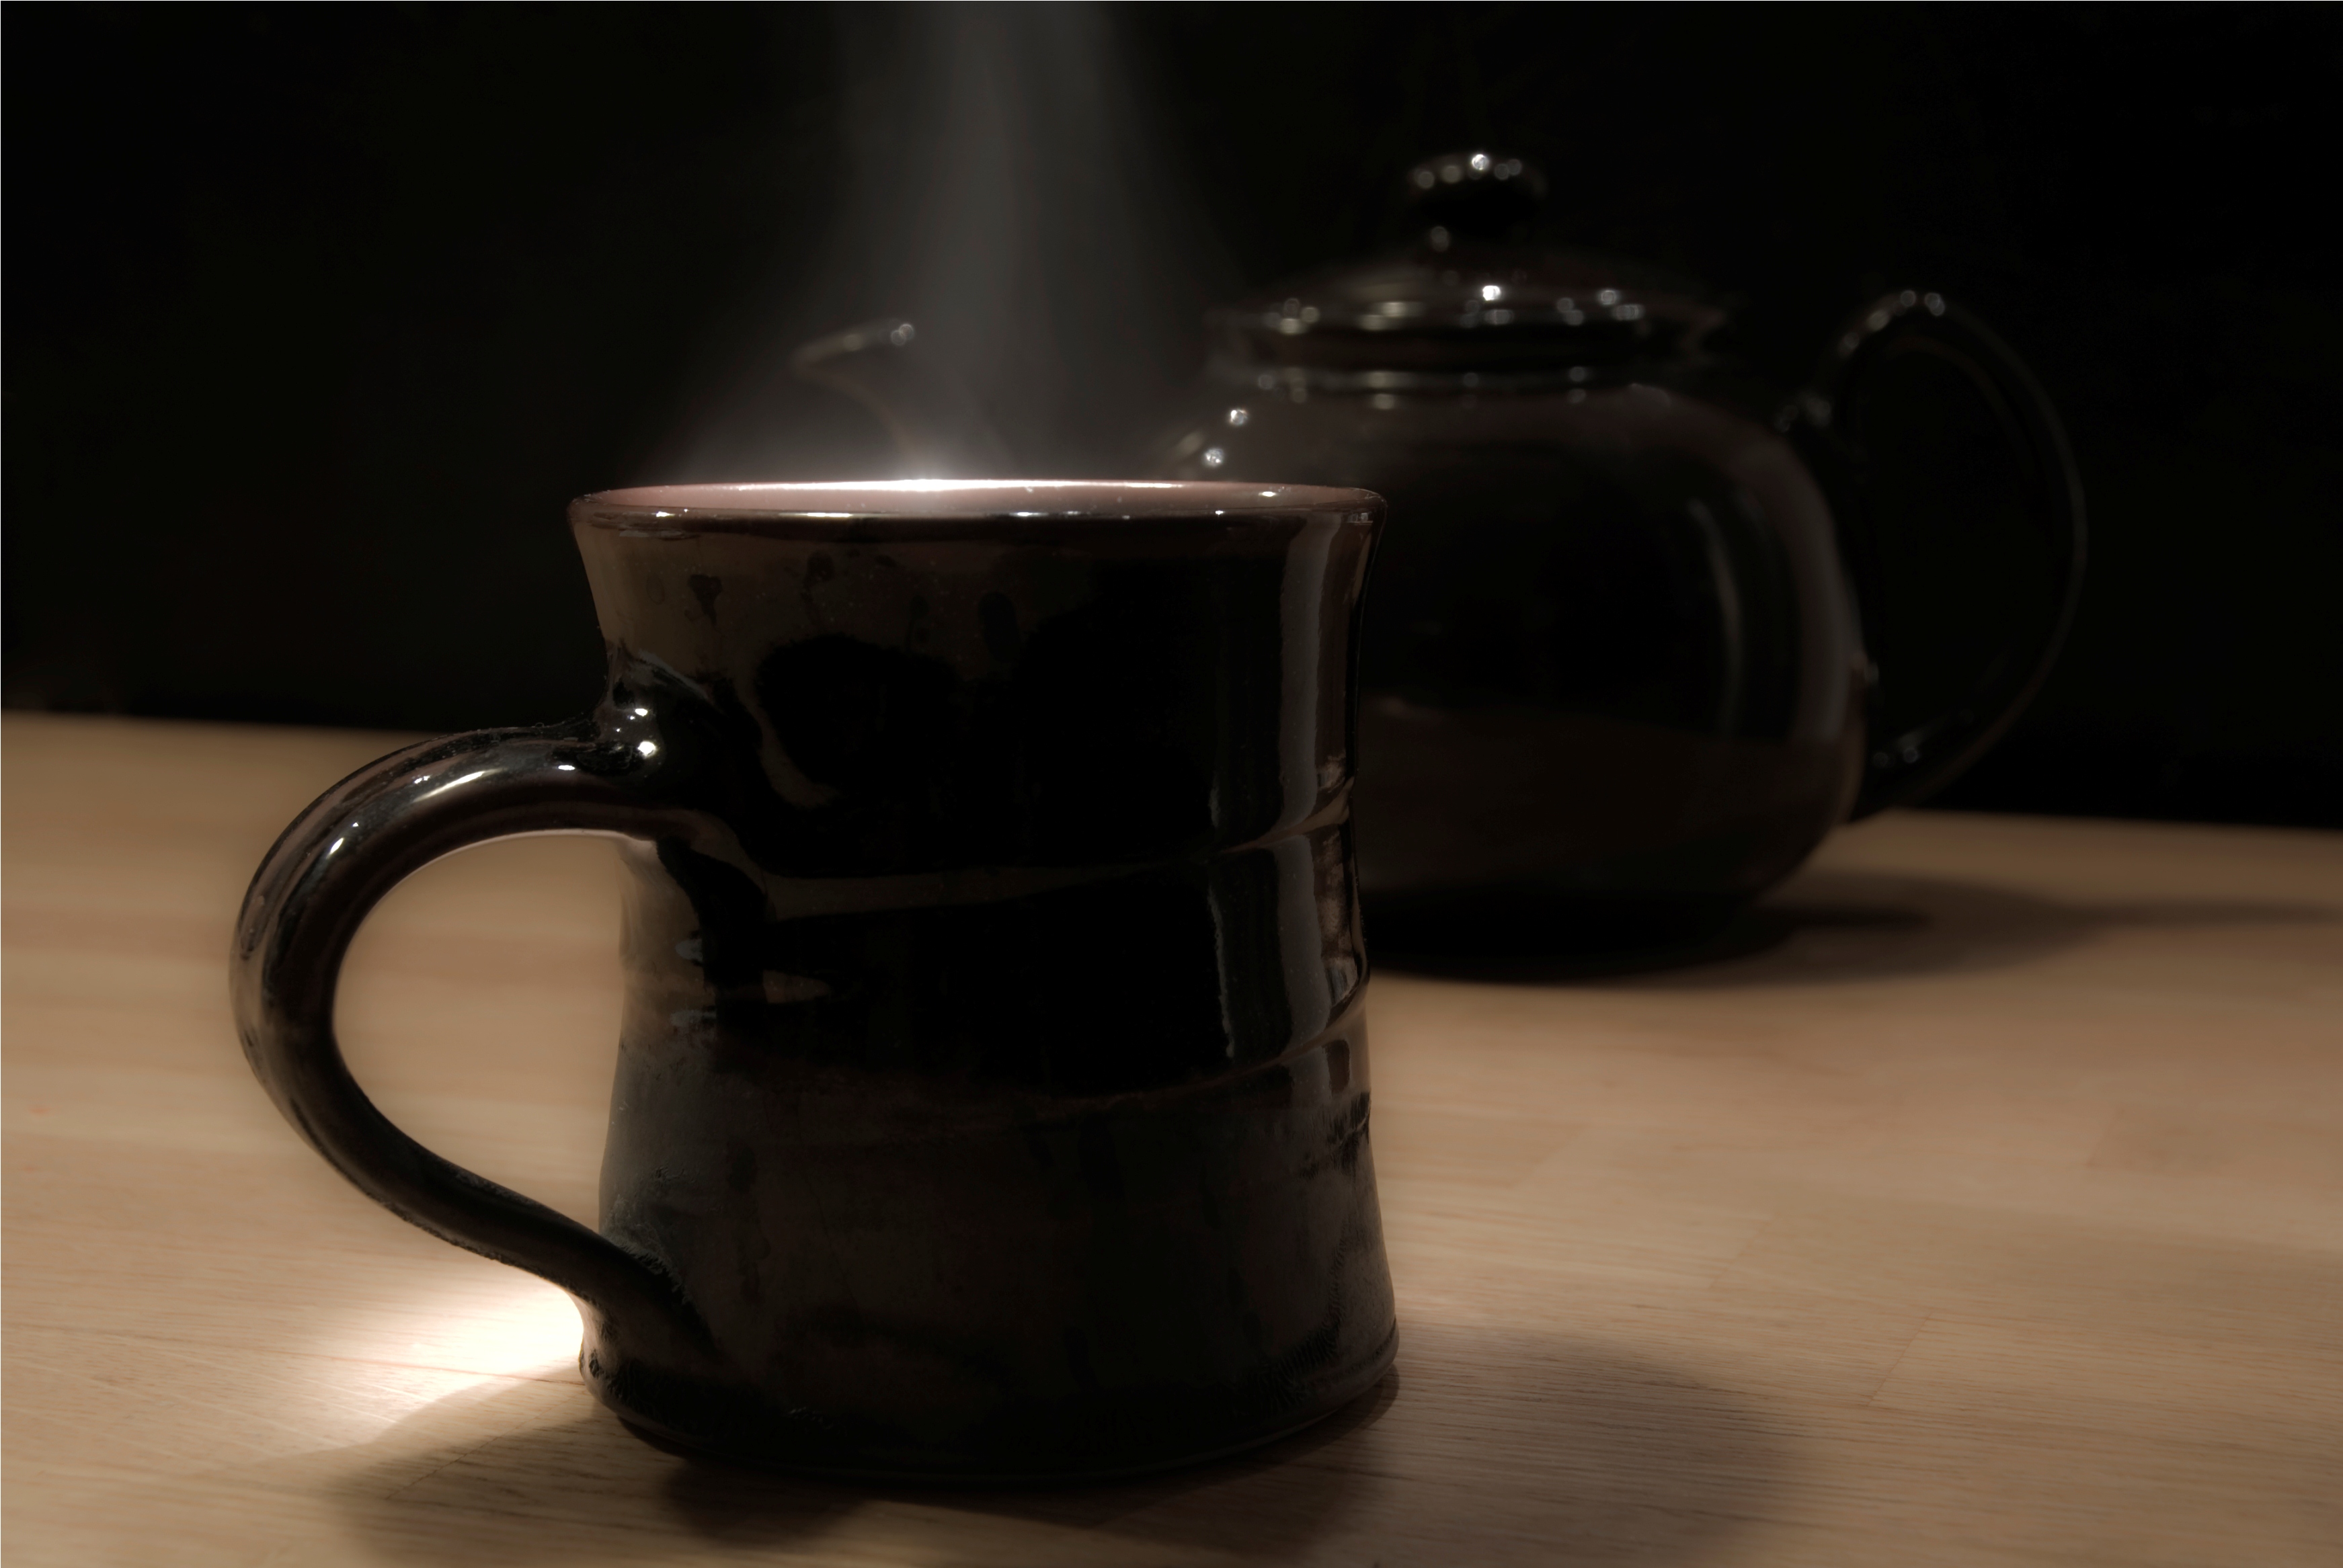 Teapot, March 2012. Photo credit: Kalense Kid.